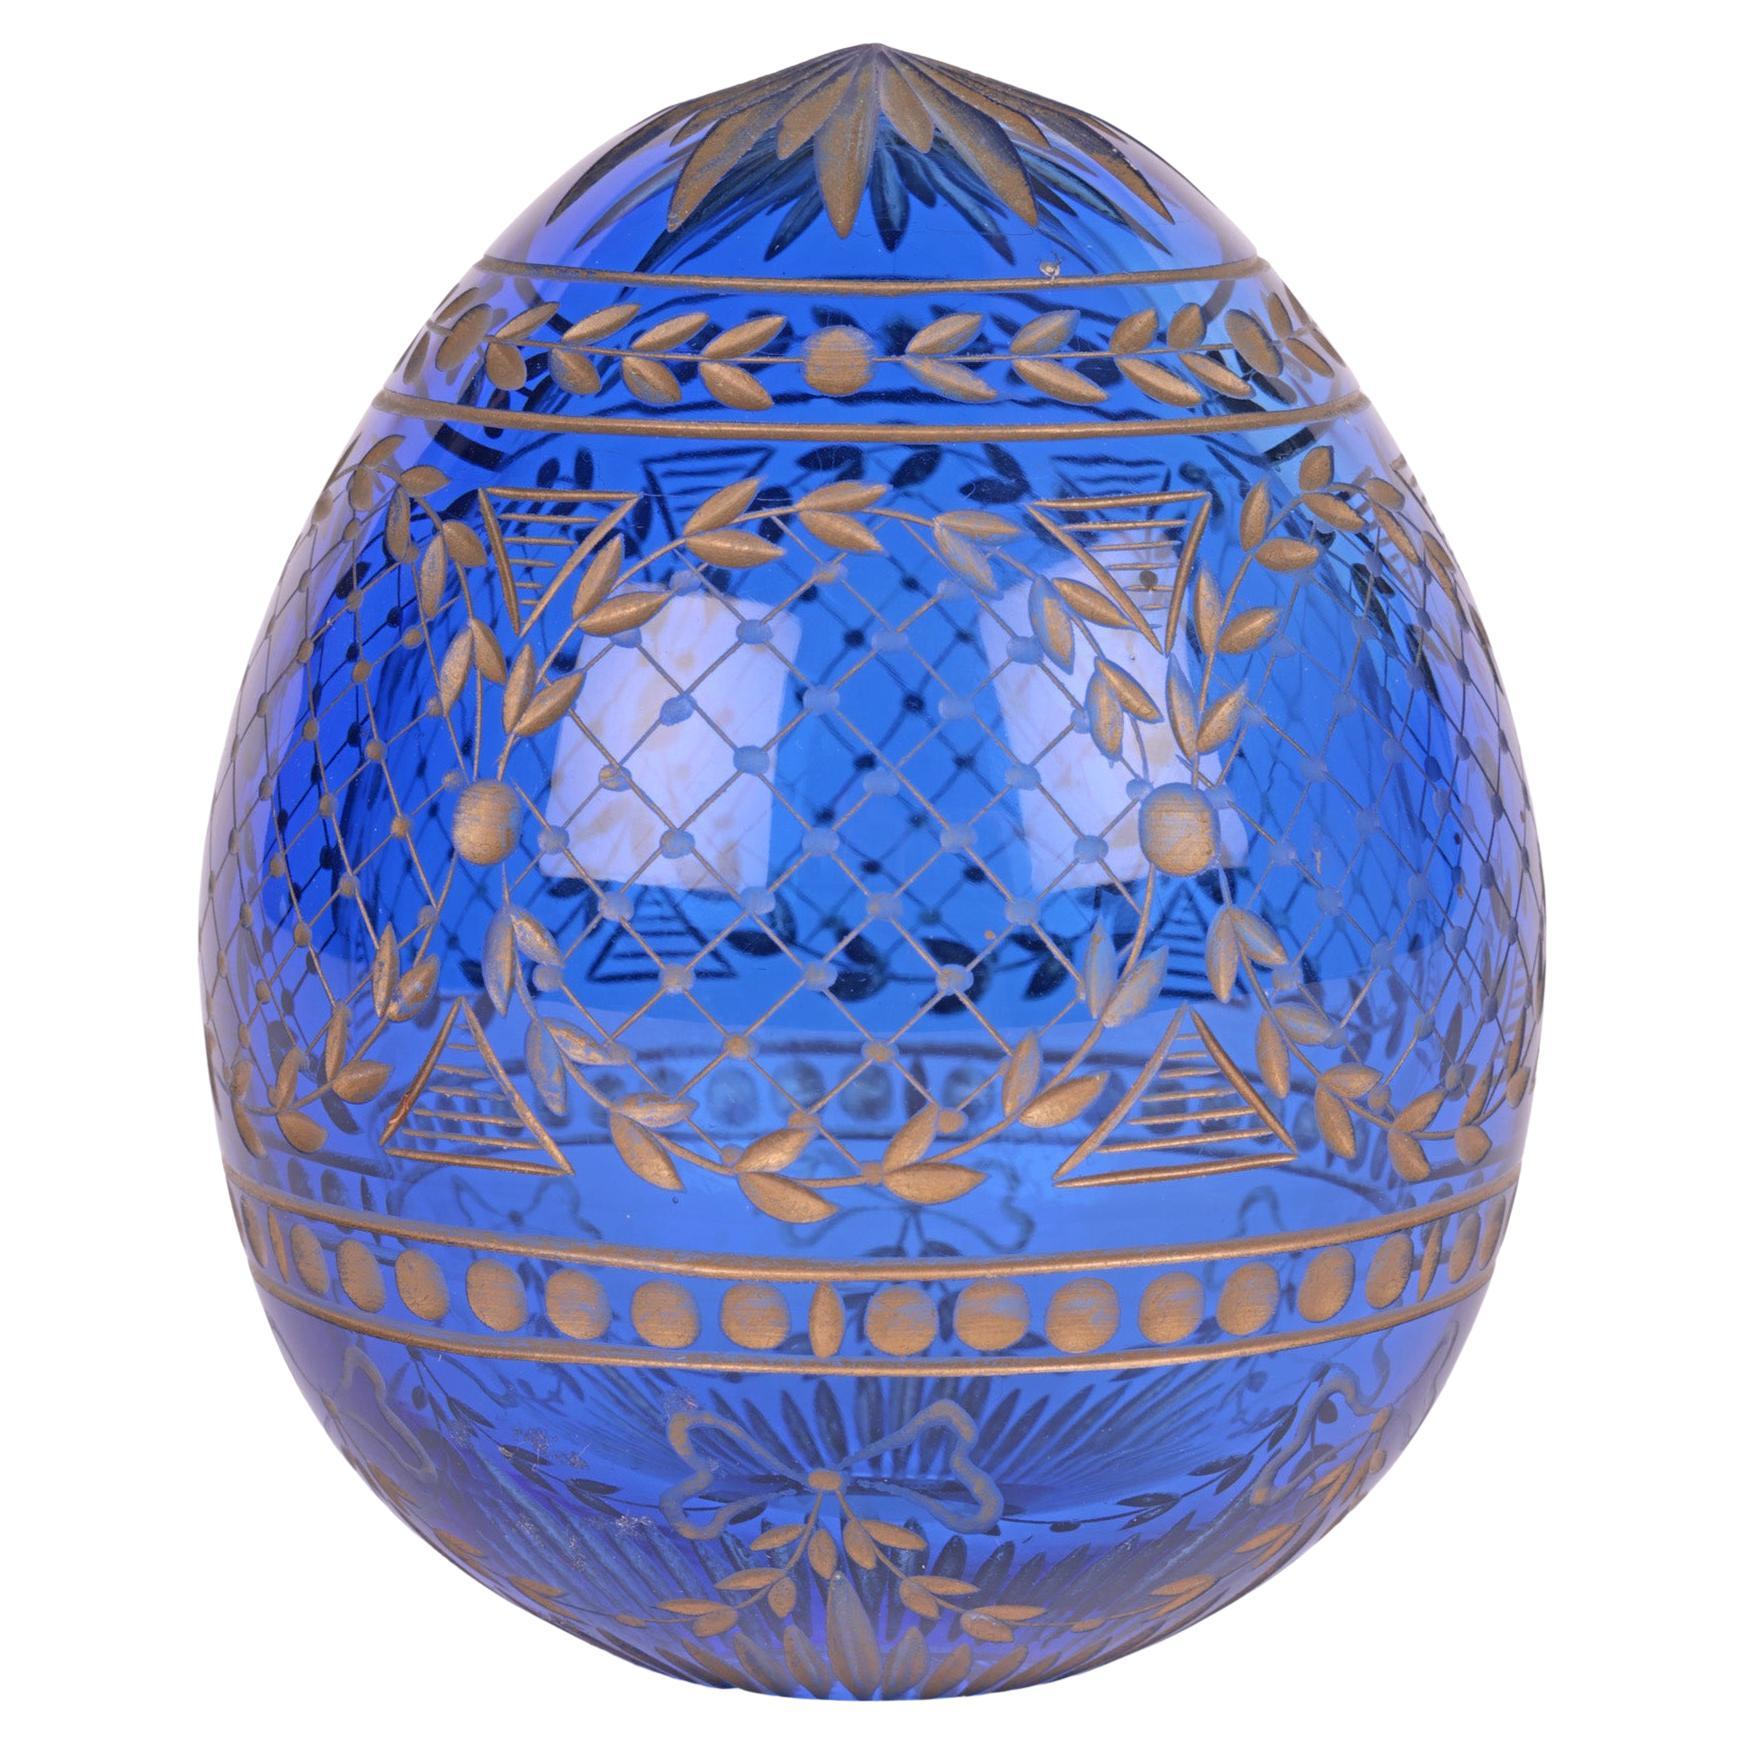 Oeuf russe en verre bleu attribué à Faberge avec motifs gravés